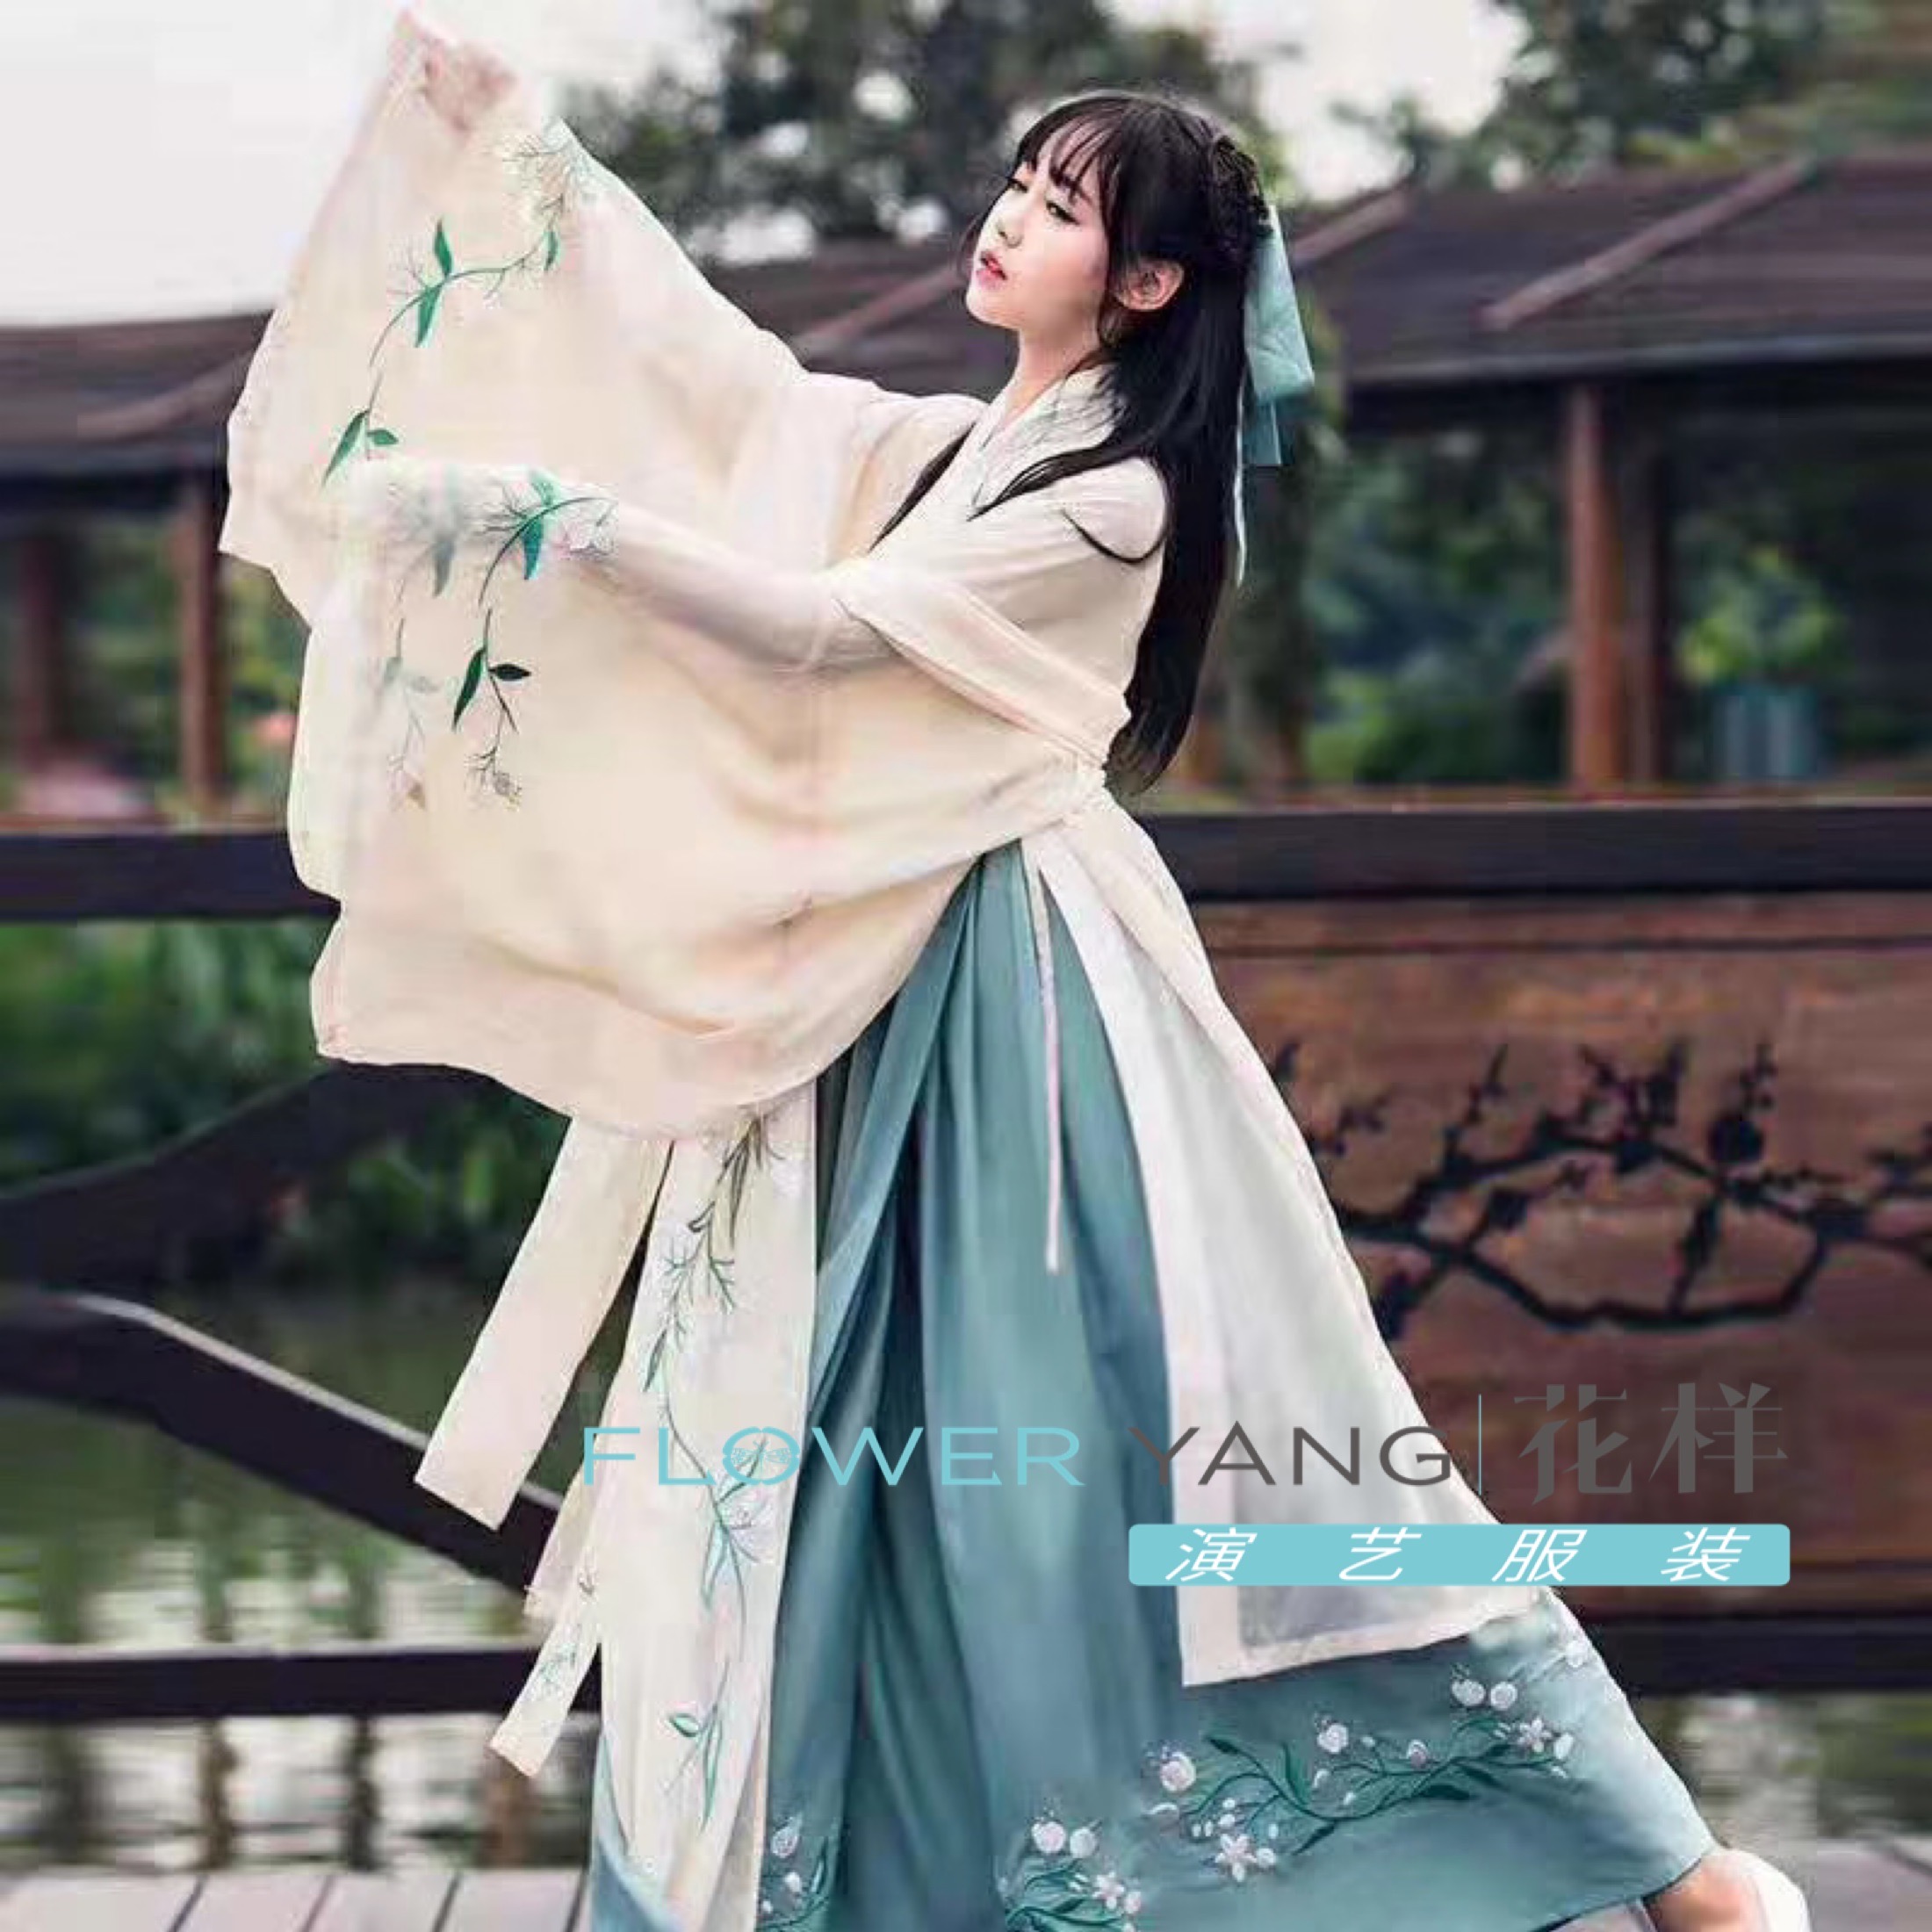 天津市花样文化传播有限公司 天津古代女服装